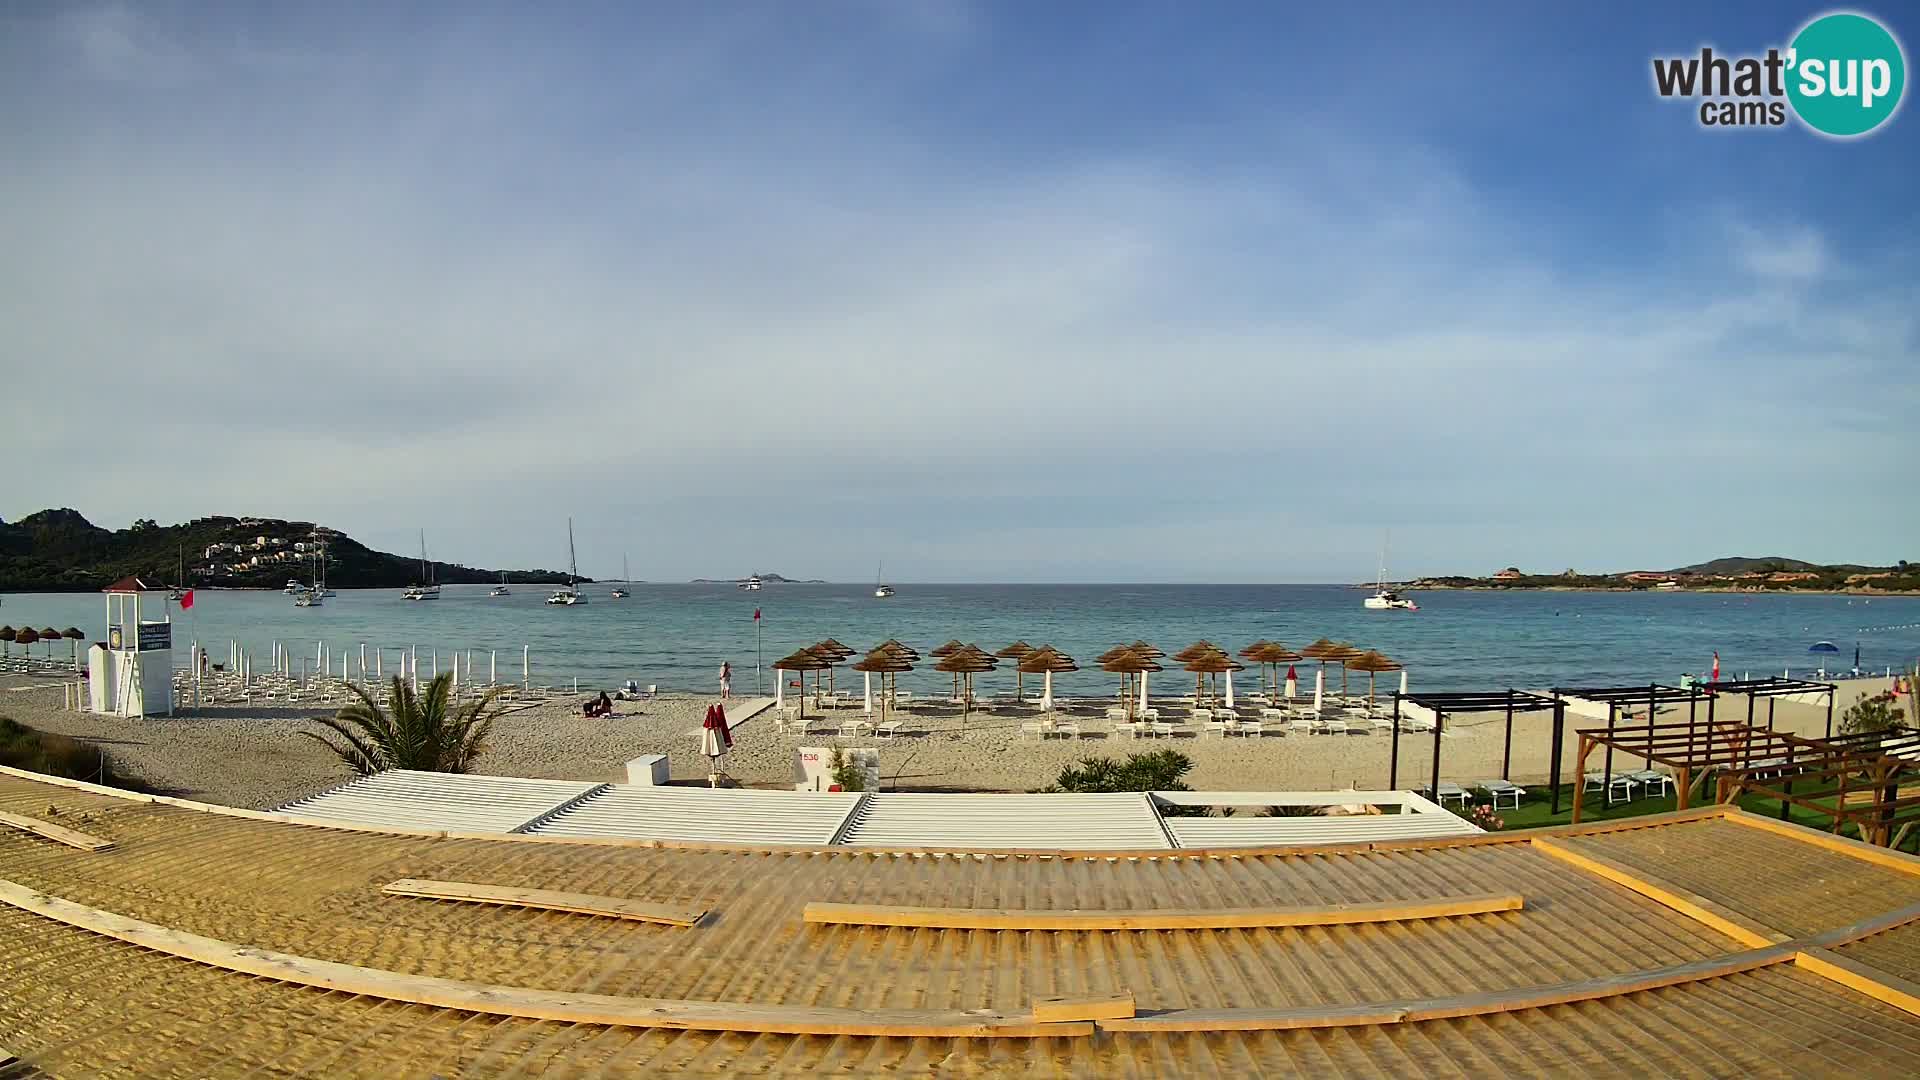 Cámara en vivo de la playa Marinella – Porto Rotondo livecam Olbia – Cerdeña